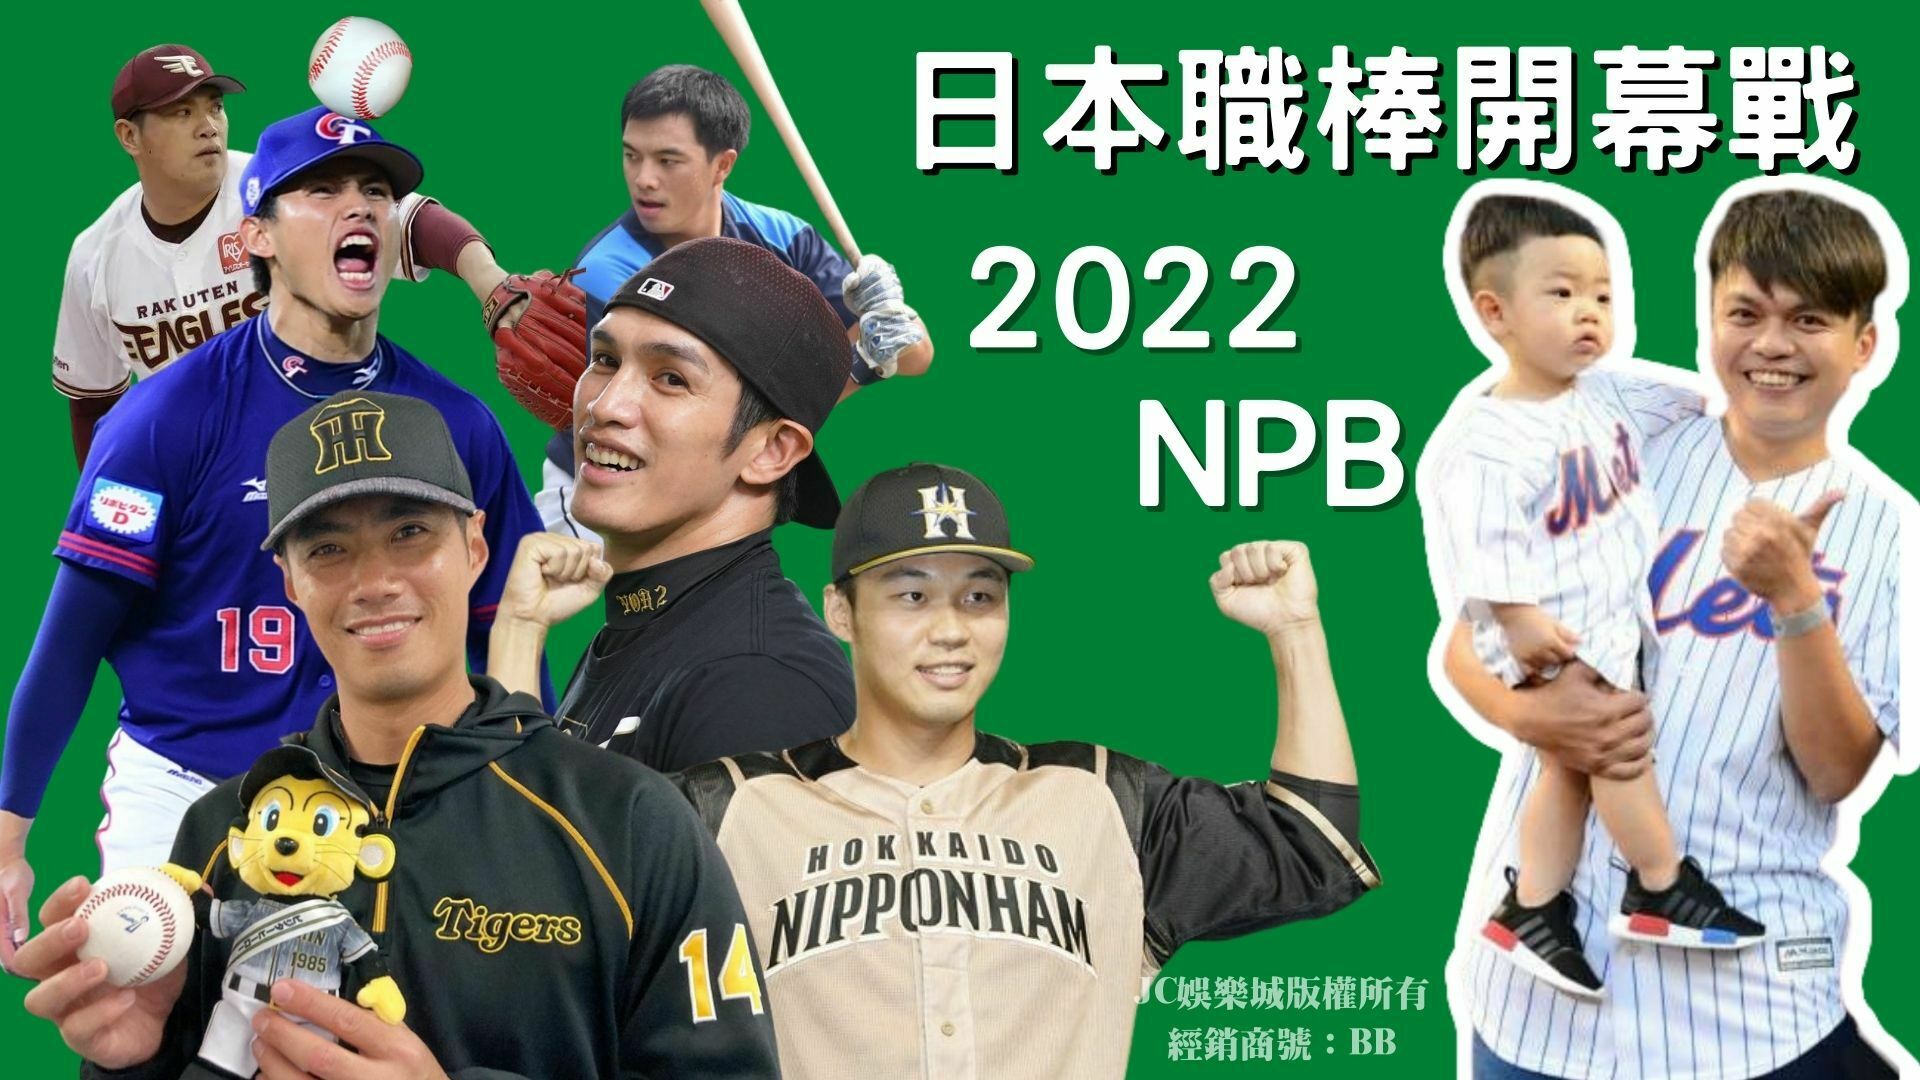 日本職棒開幕戰2022